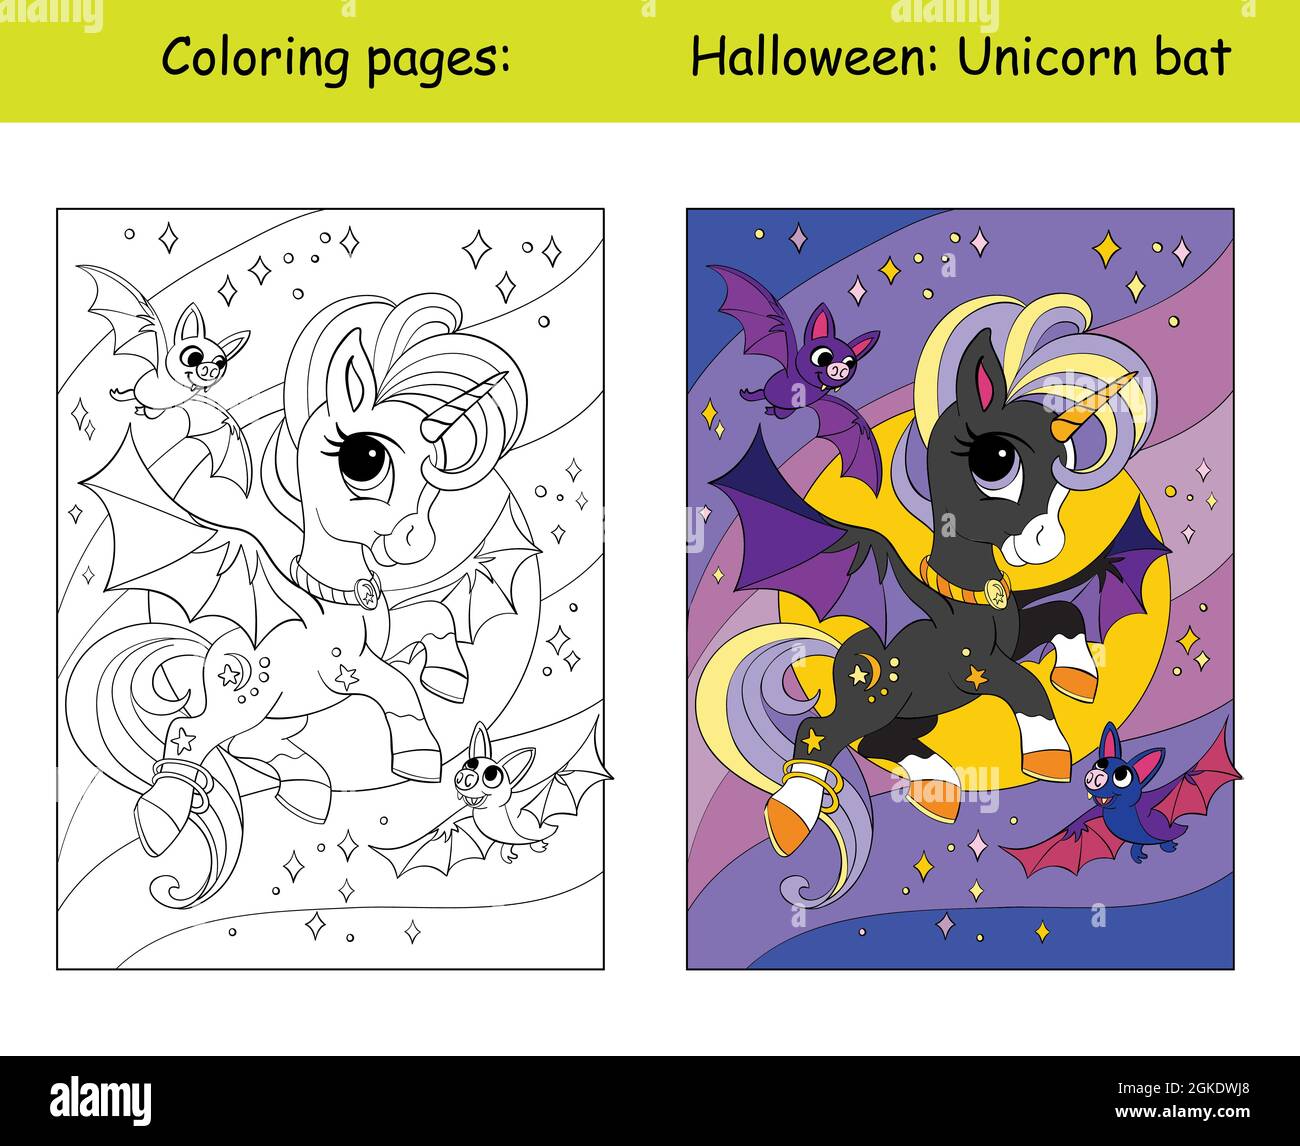 Simpatico unicorno con ali vola nel cielo stellato di notte con bats.Halloween concetto. Colorazione per bambini con modello colorato. Vettore cartoon illust Illustrazione Vettoriale